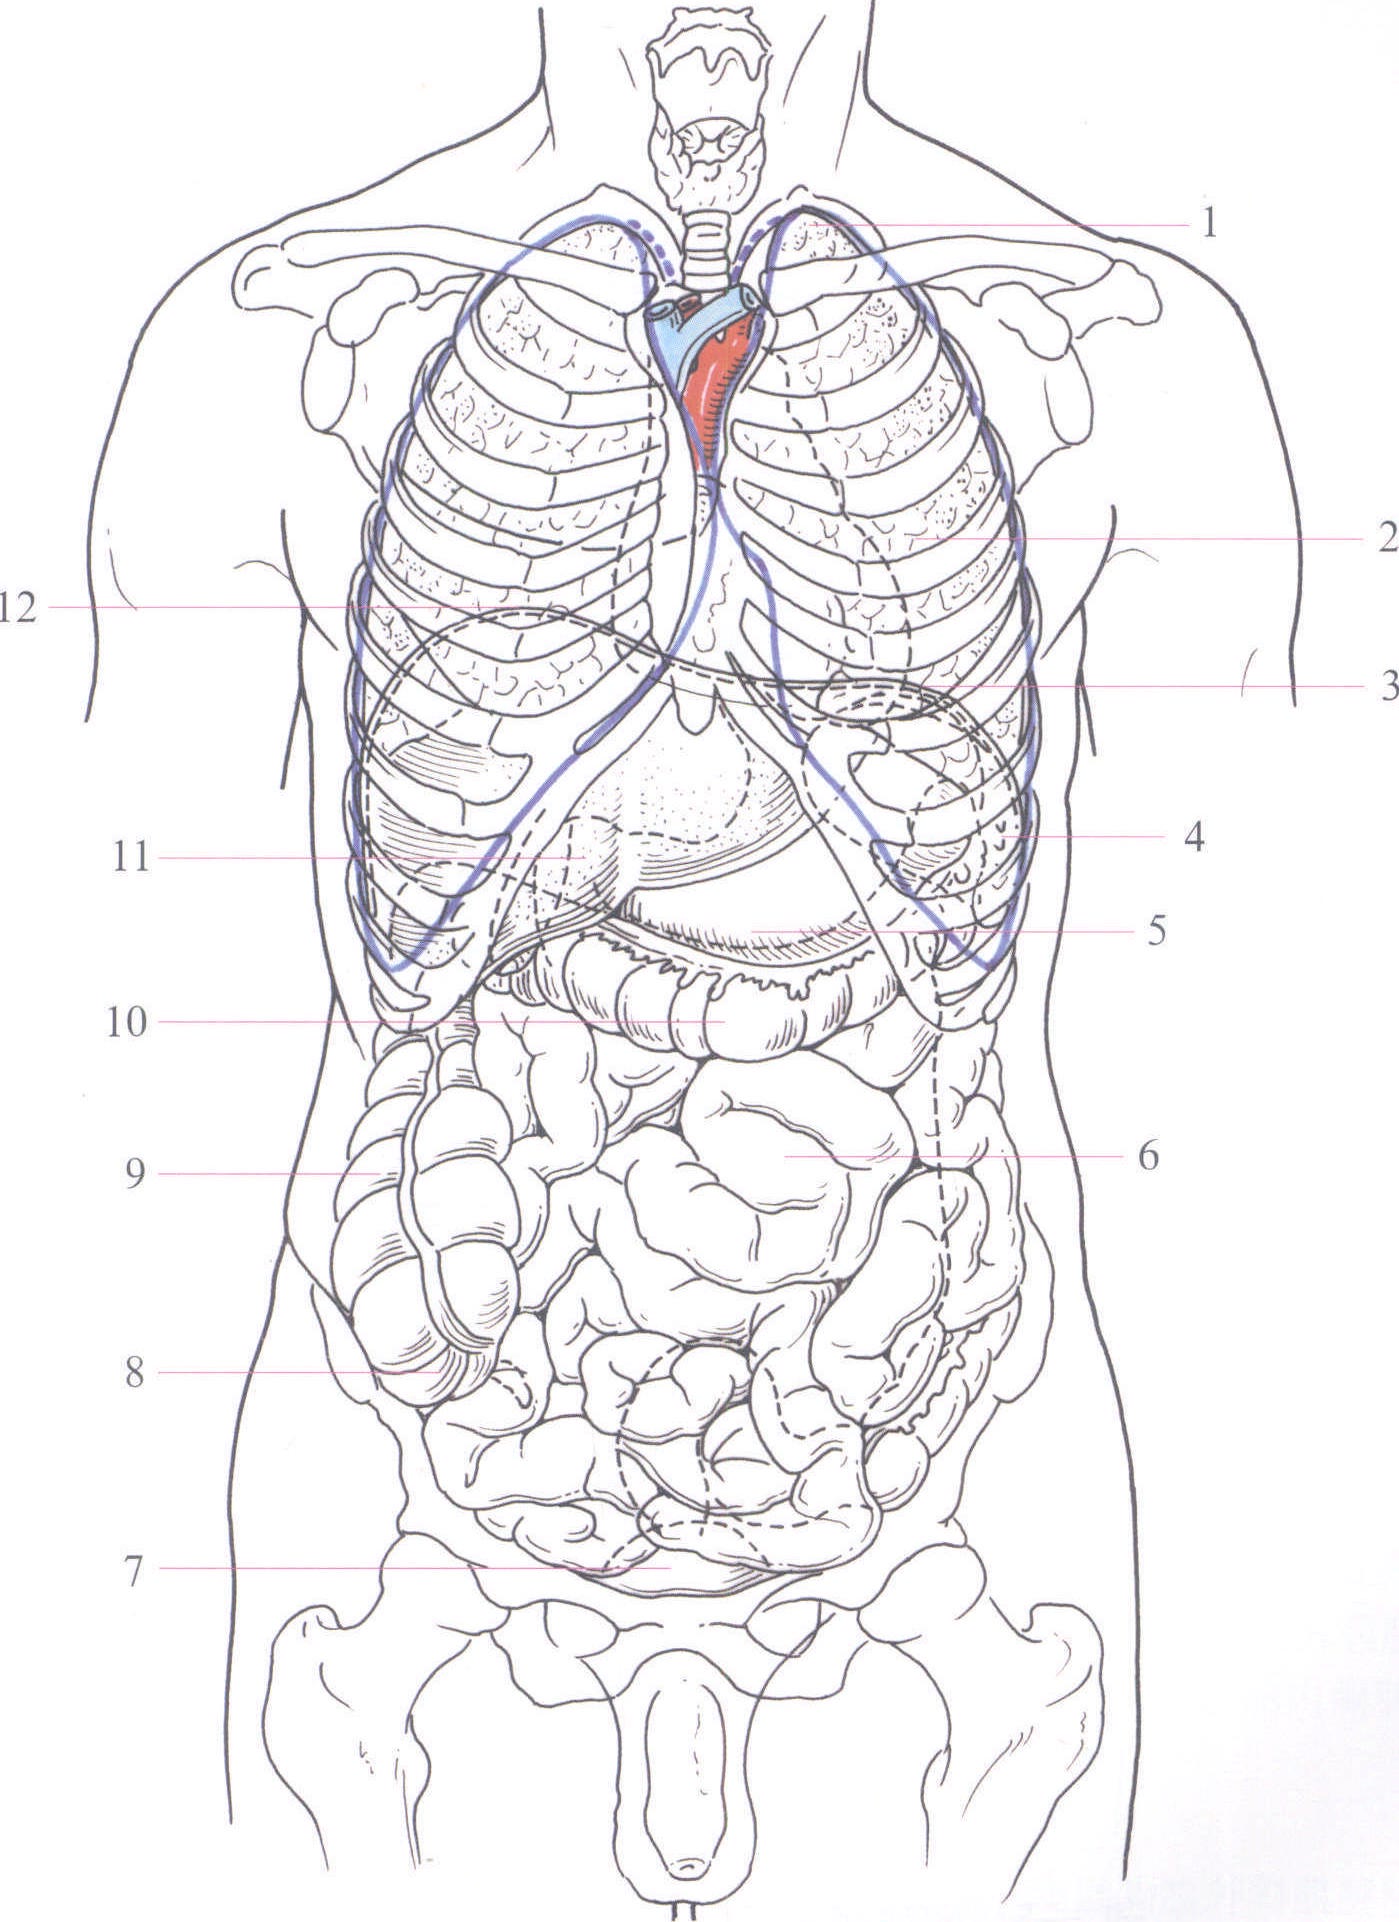 人的肚腑解剖学 库存例证. 插画 包括有 爱好健美者, 胆量, 疾病, 肚腑, 健康, 检查, 胆囊, 高亮度显示 - 74201261